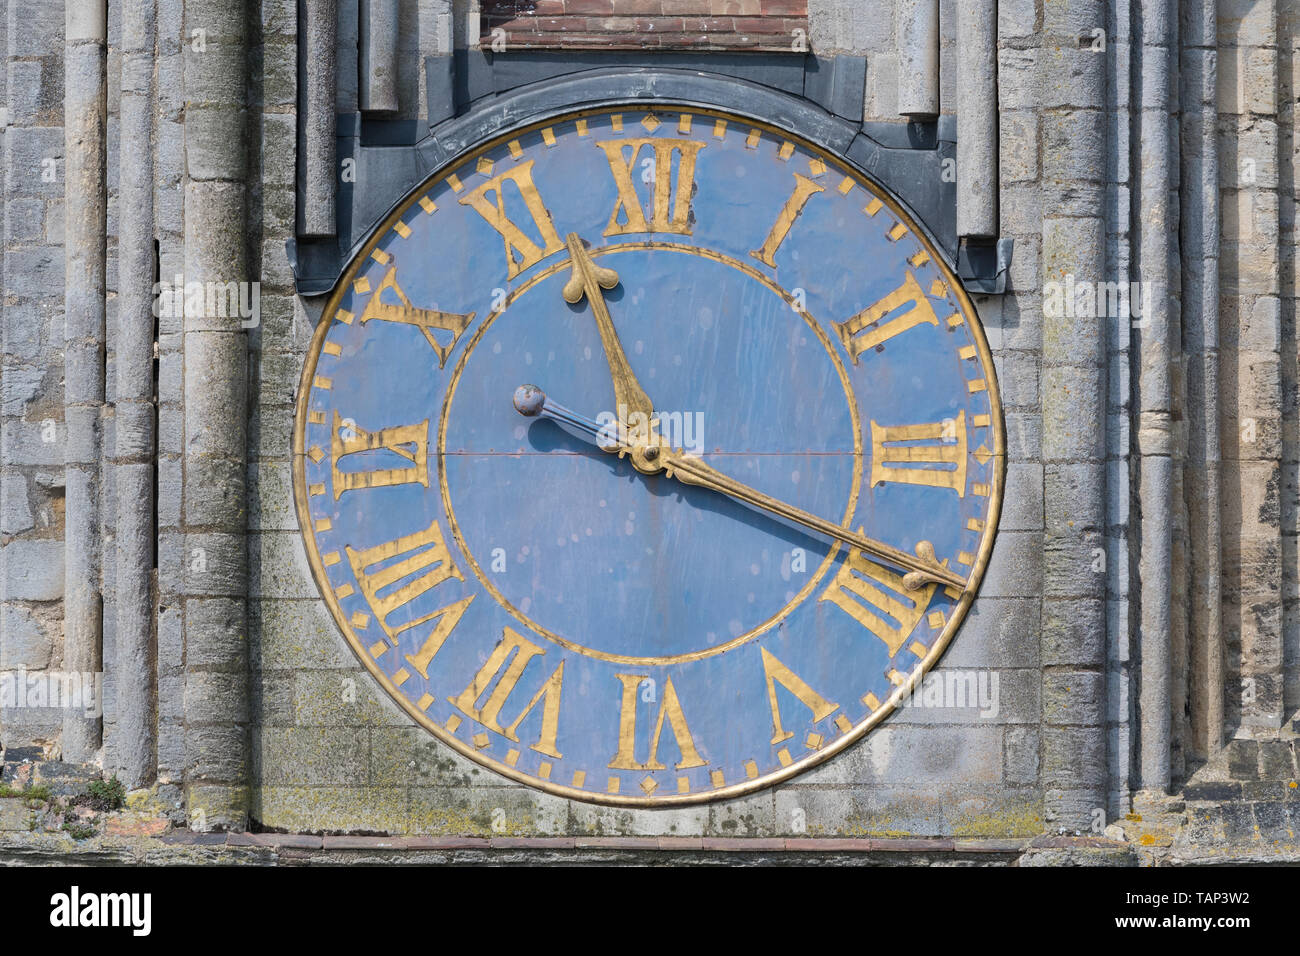 Blau und Gold Kirche Uhr mit römischen Ziffern - die Kathedrale von Ely, Cambridgeshire, England, Großbritannien Stockfoto